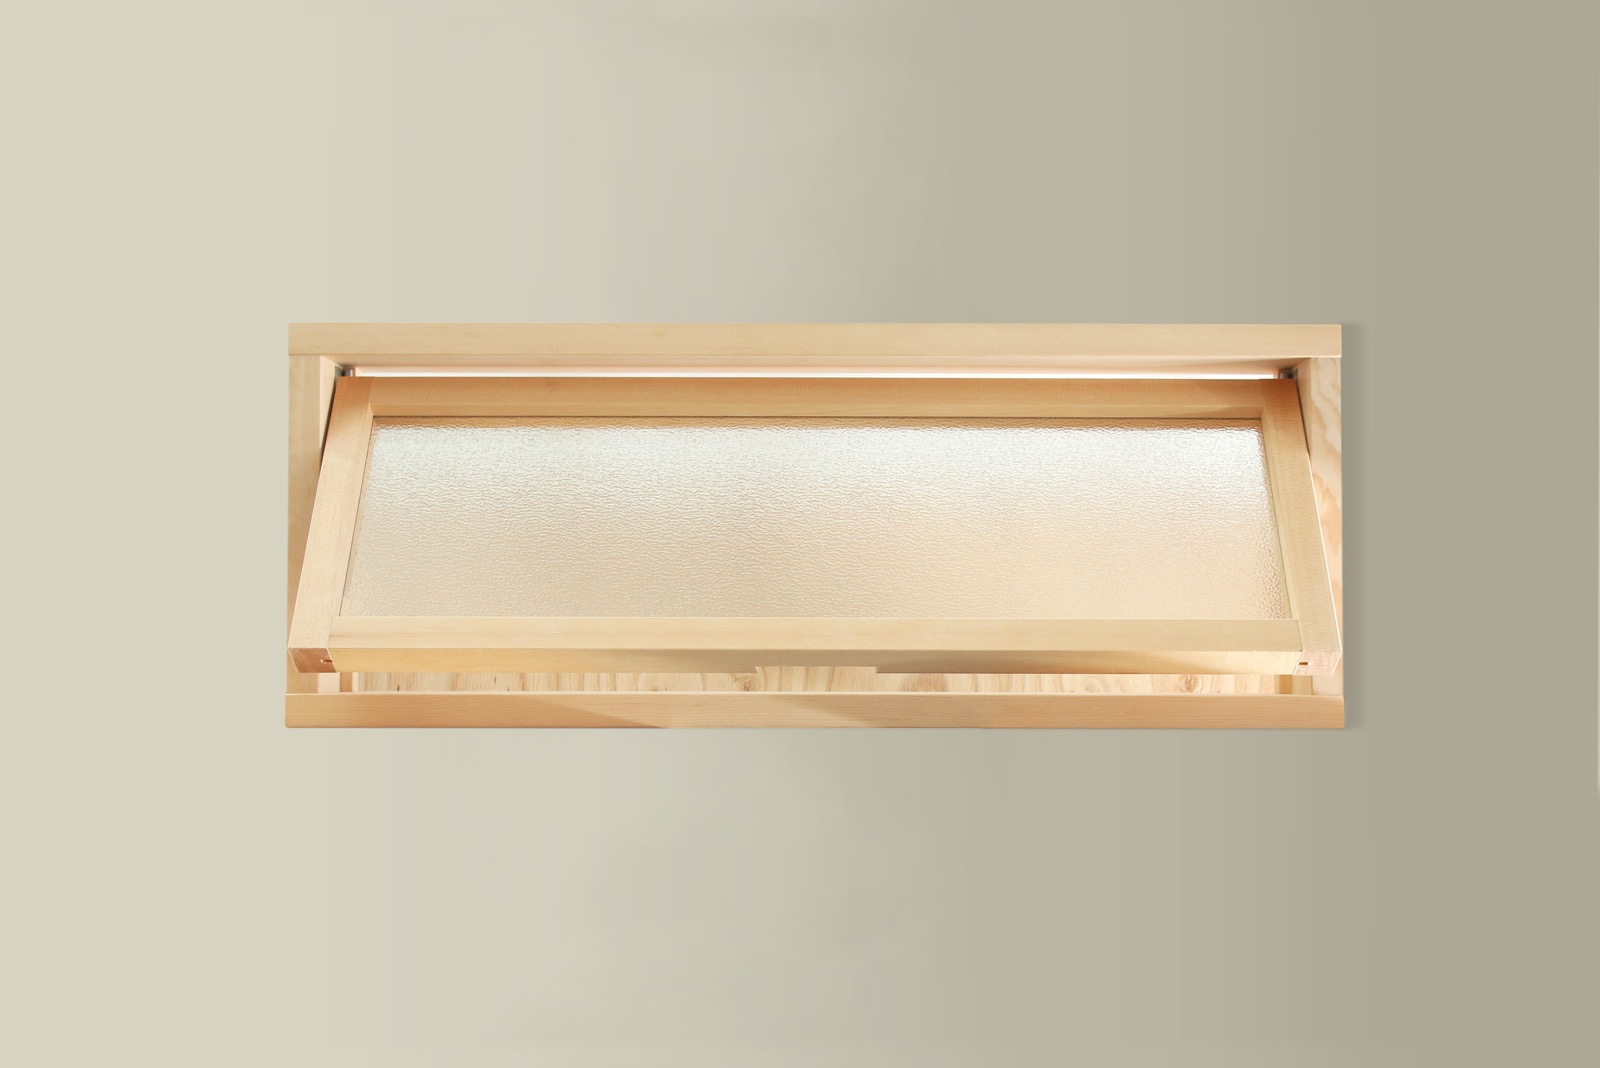 木製室内窓 横長1連 押し出しタイプ DW-DR008-03-G164 型板ガラス（梨地模様）は中の様子が分からない程度の透け具合